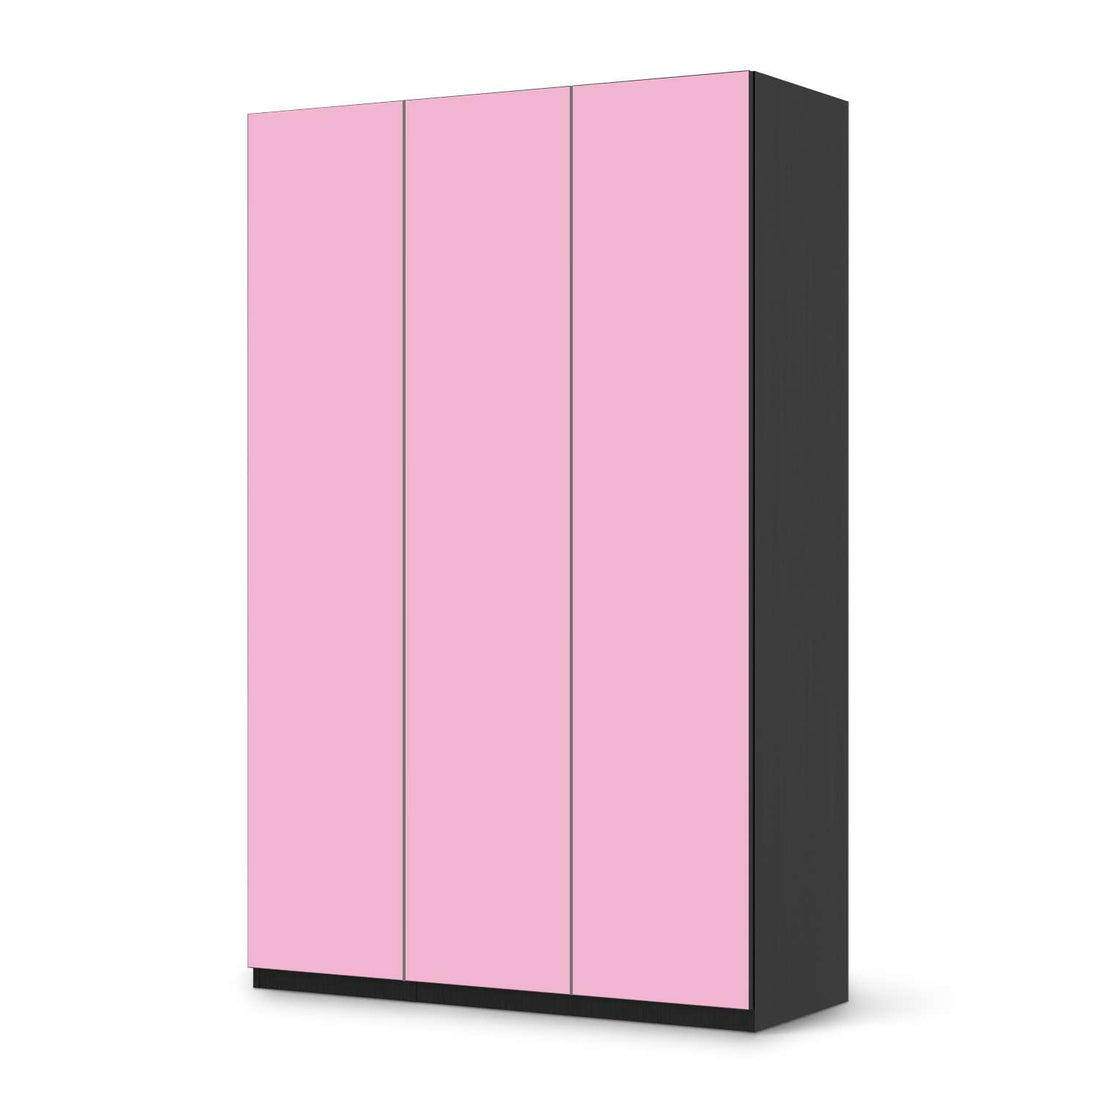 Selbstklebende Folie Pink Light - IKEA Pax Schrank 236 cm Höhe - 3 Türen - schwarz